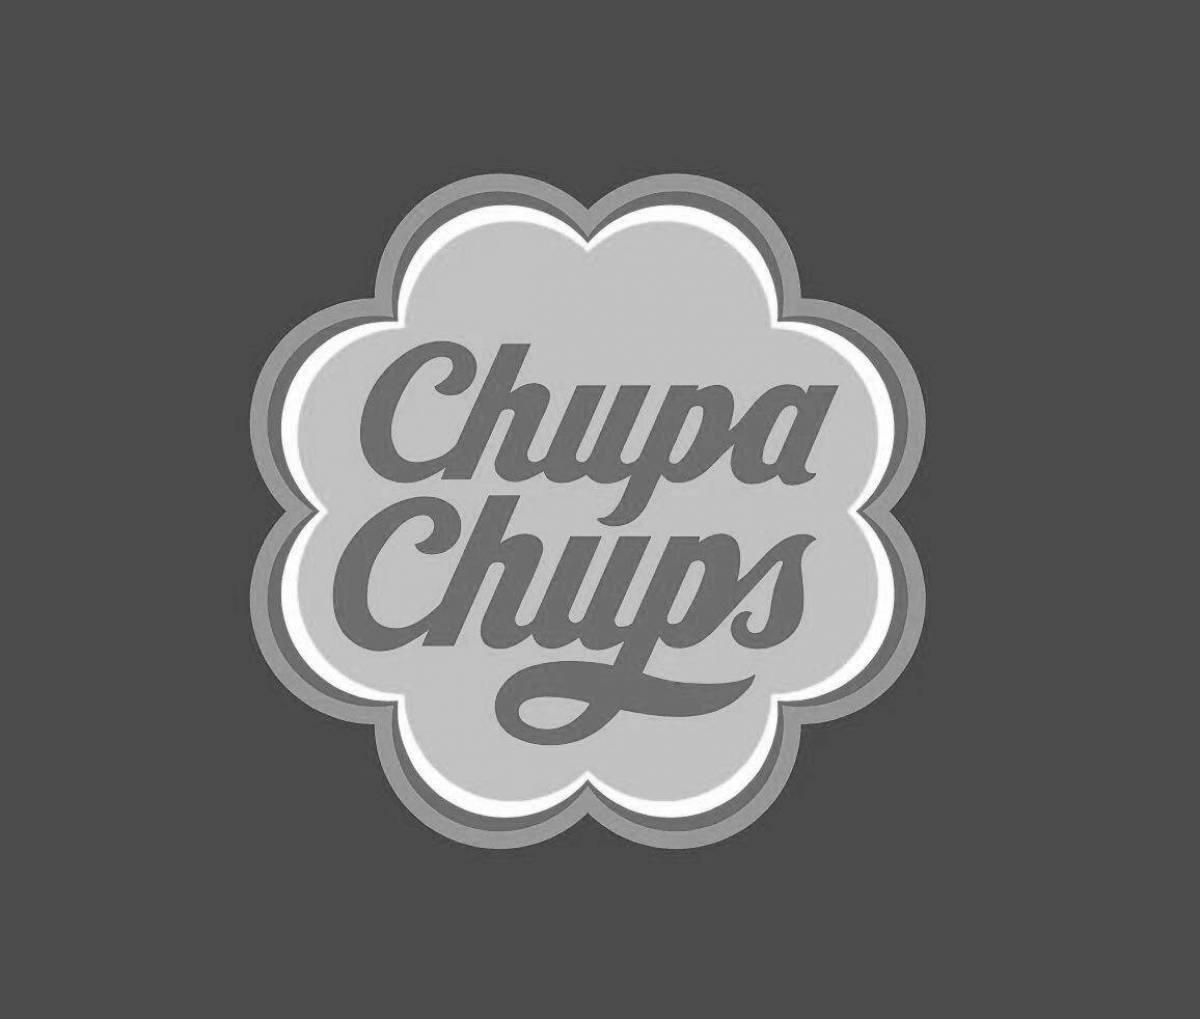 Animated chupa chups logo coloring page